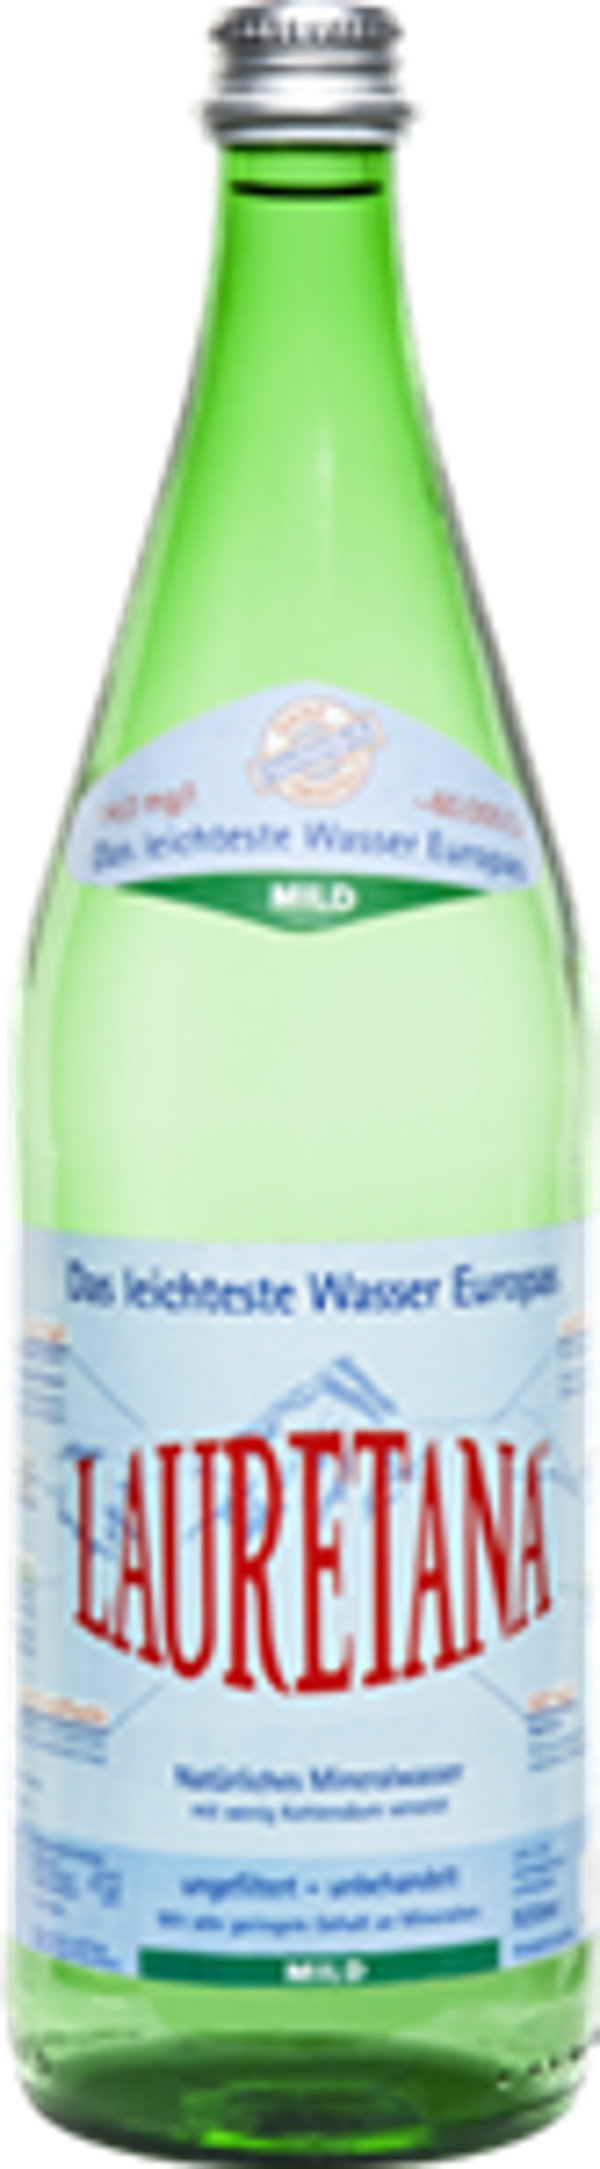 Produktfoto zu VPE Lauretana Mineralwasser mild 6x1 l